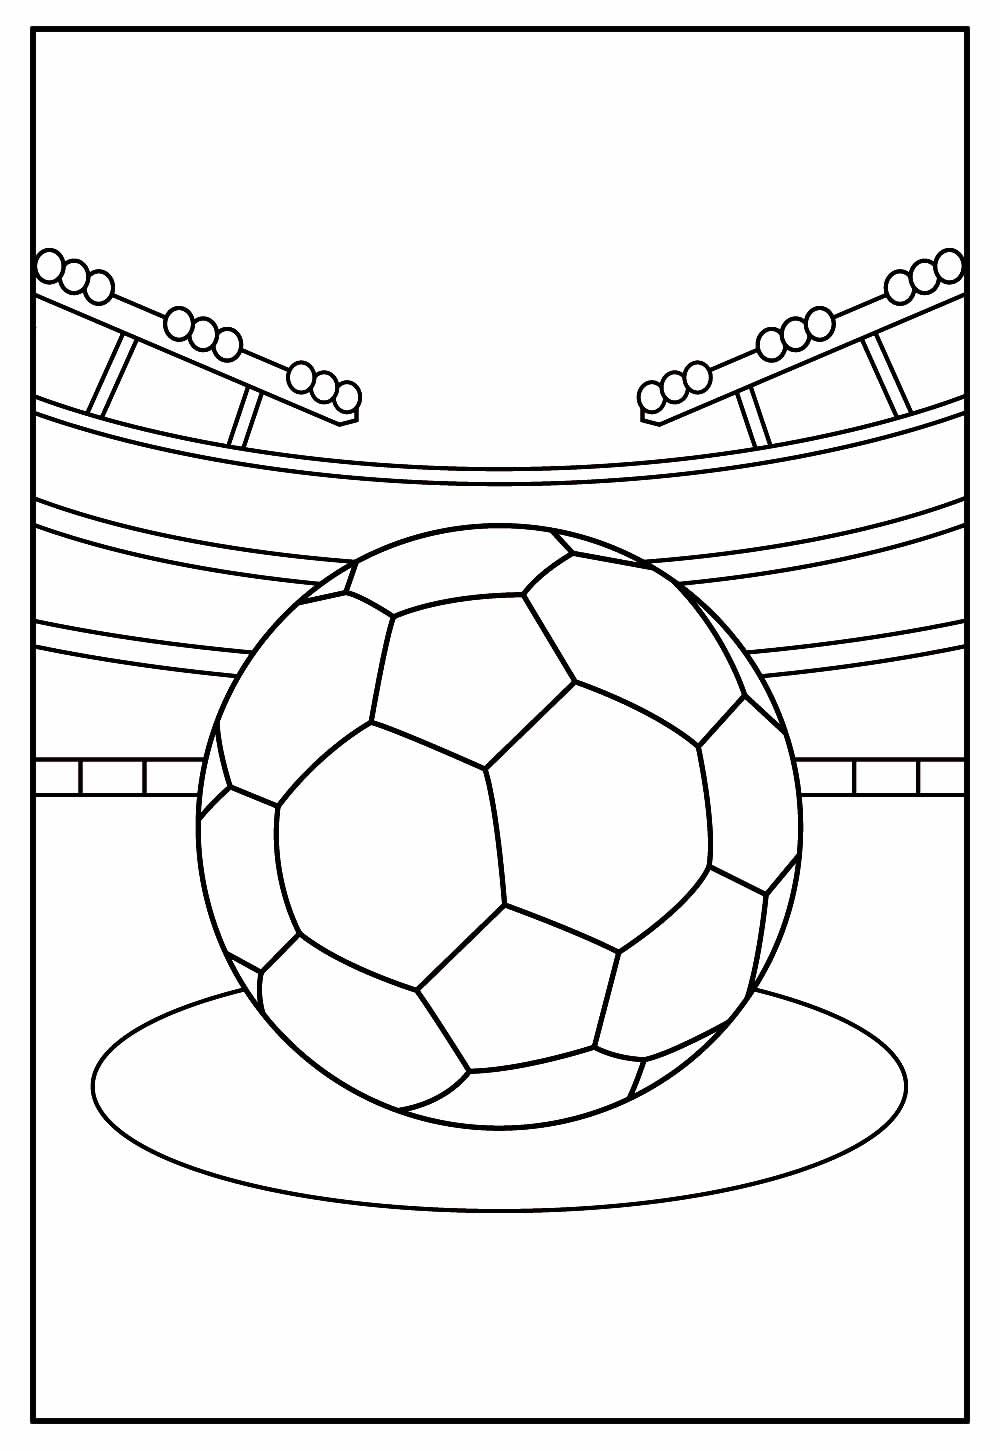 Desenho para pintar da Copa do Mundo